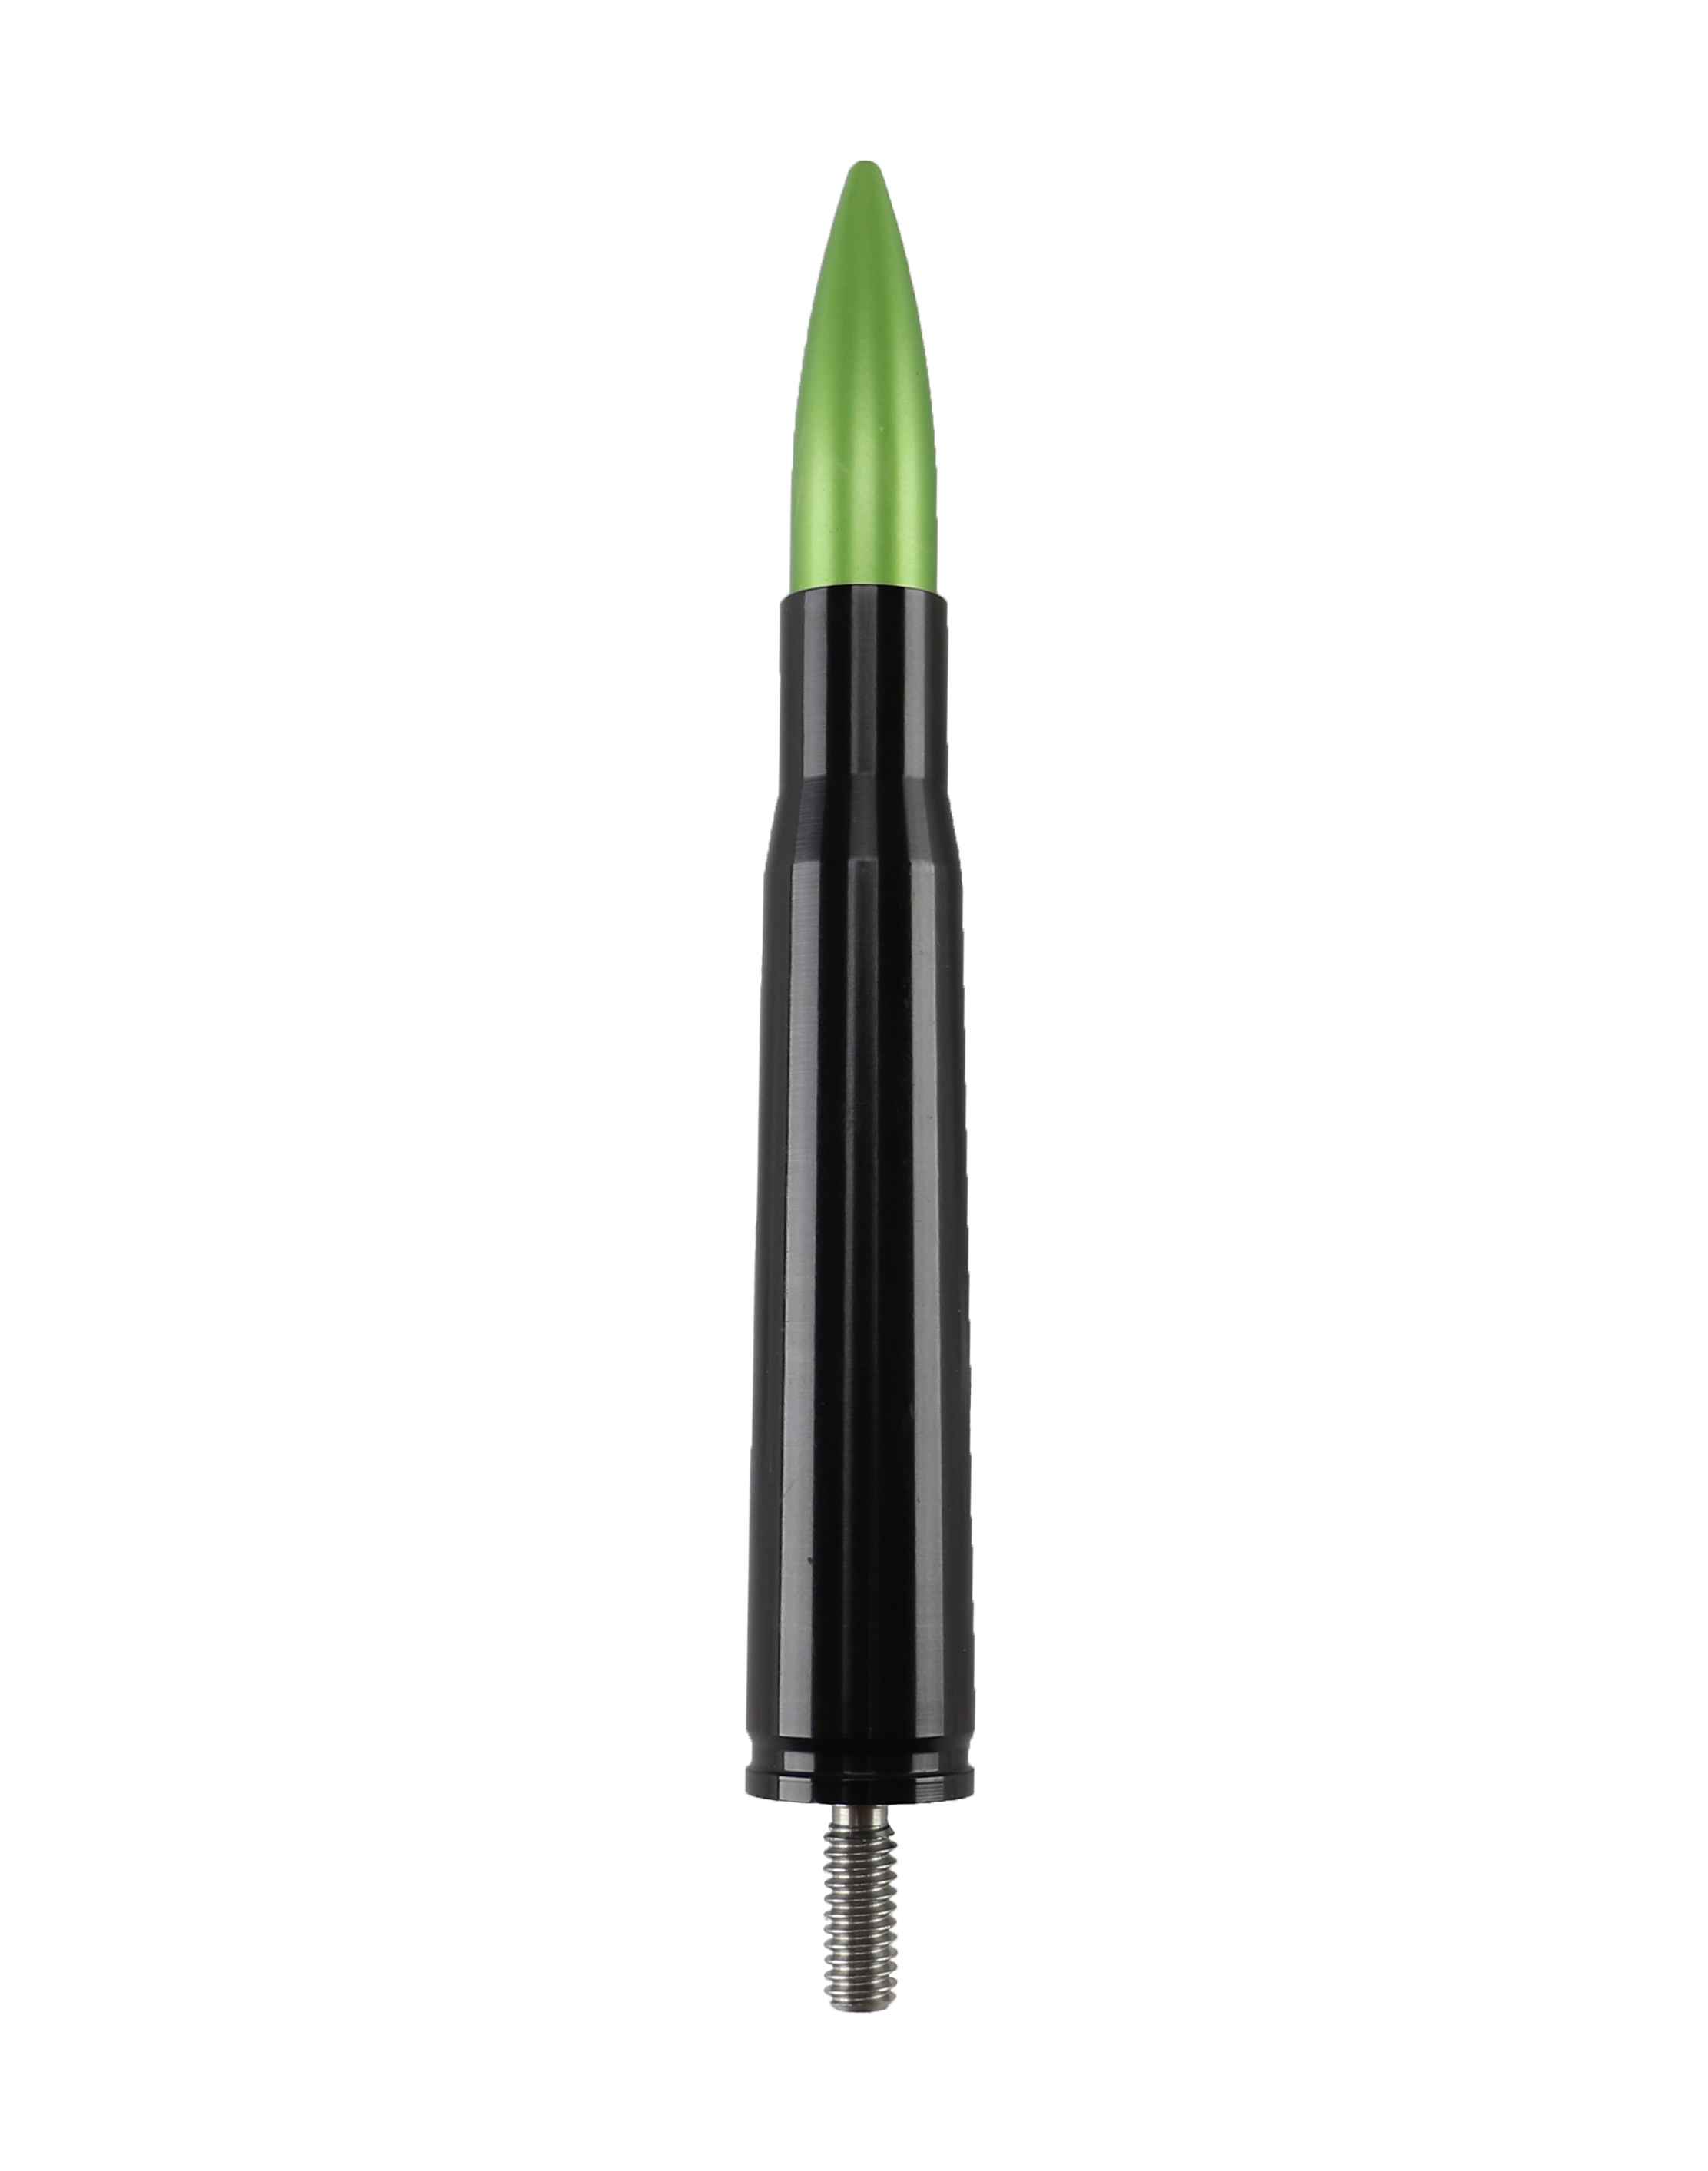 Votex - Made in USA - GREEN 50 Caliber Bullet Aluminum Antenna - Part Number A435-GREEN-JJP